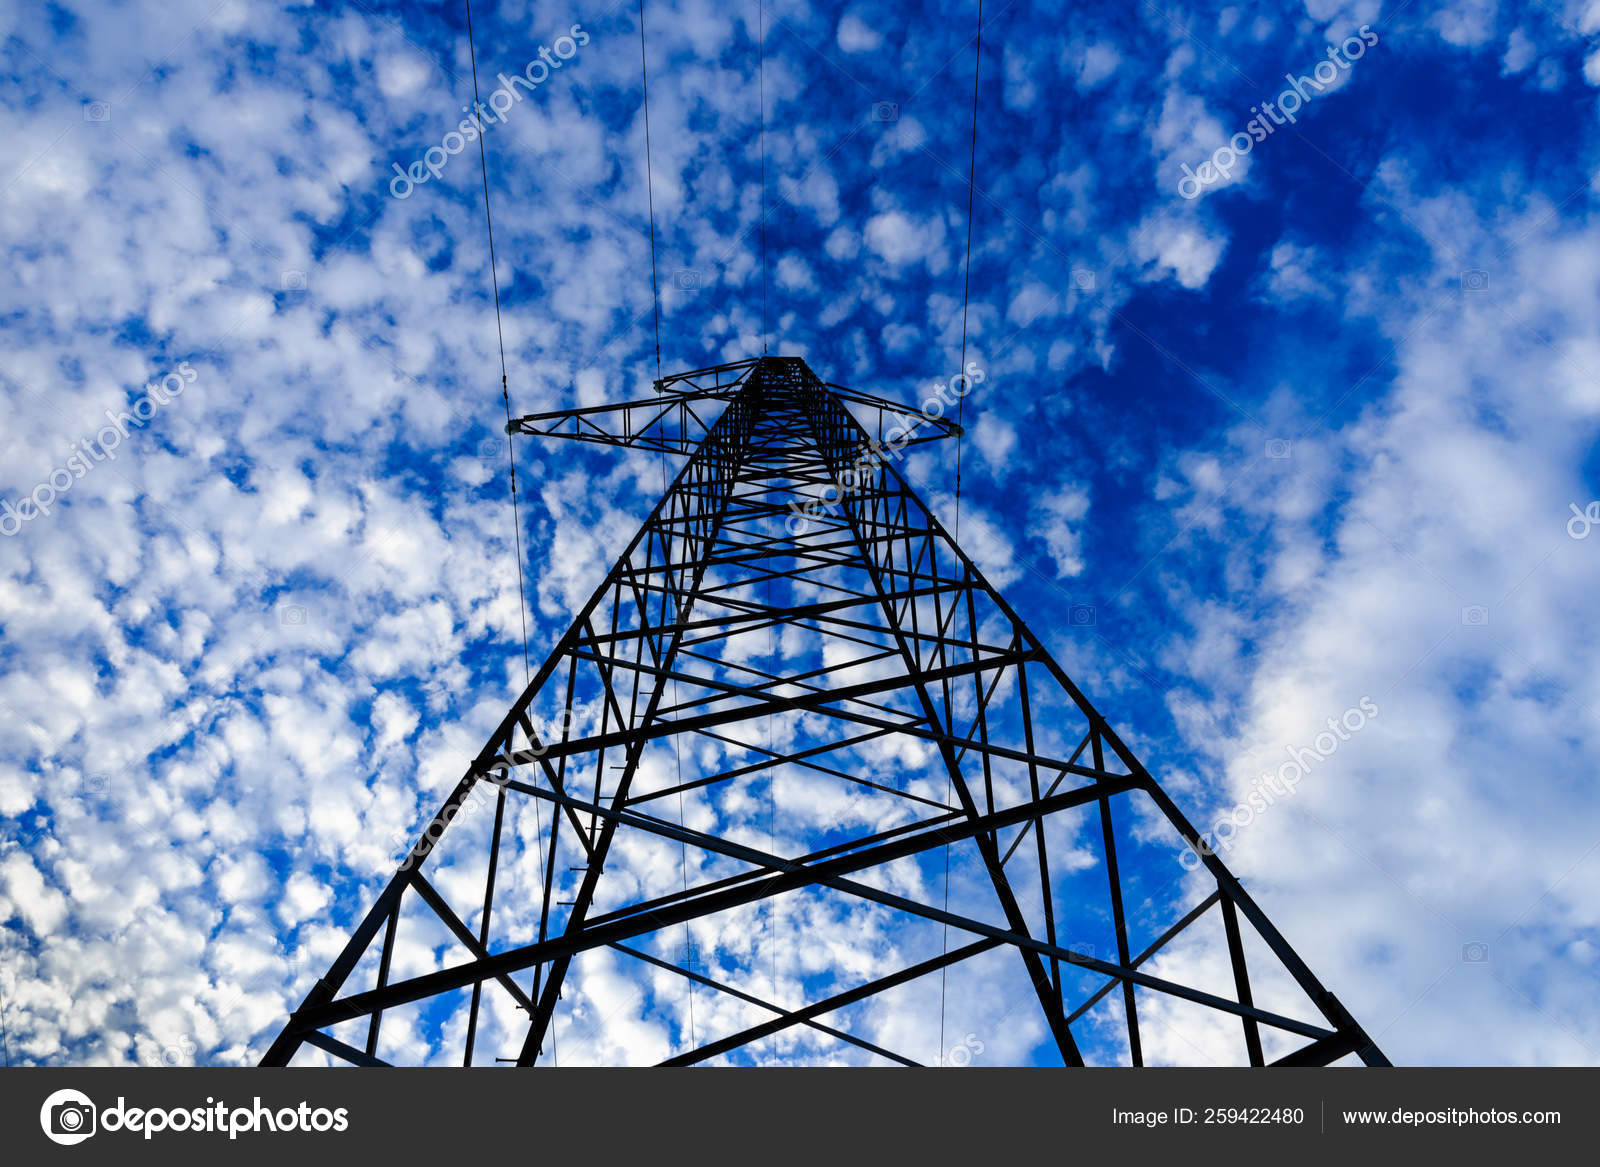 云蓝蓝的天空背景上的电源线 图库照片 C Yayimages 259422480